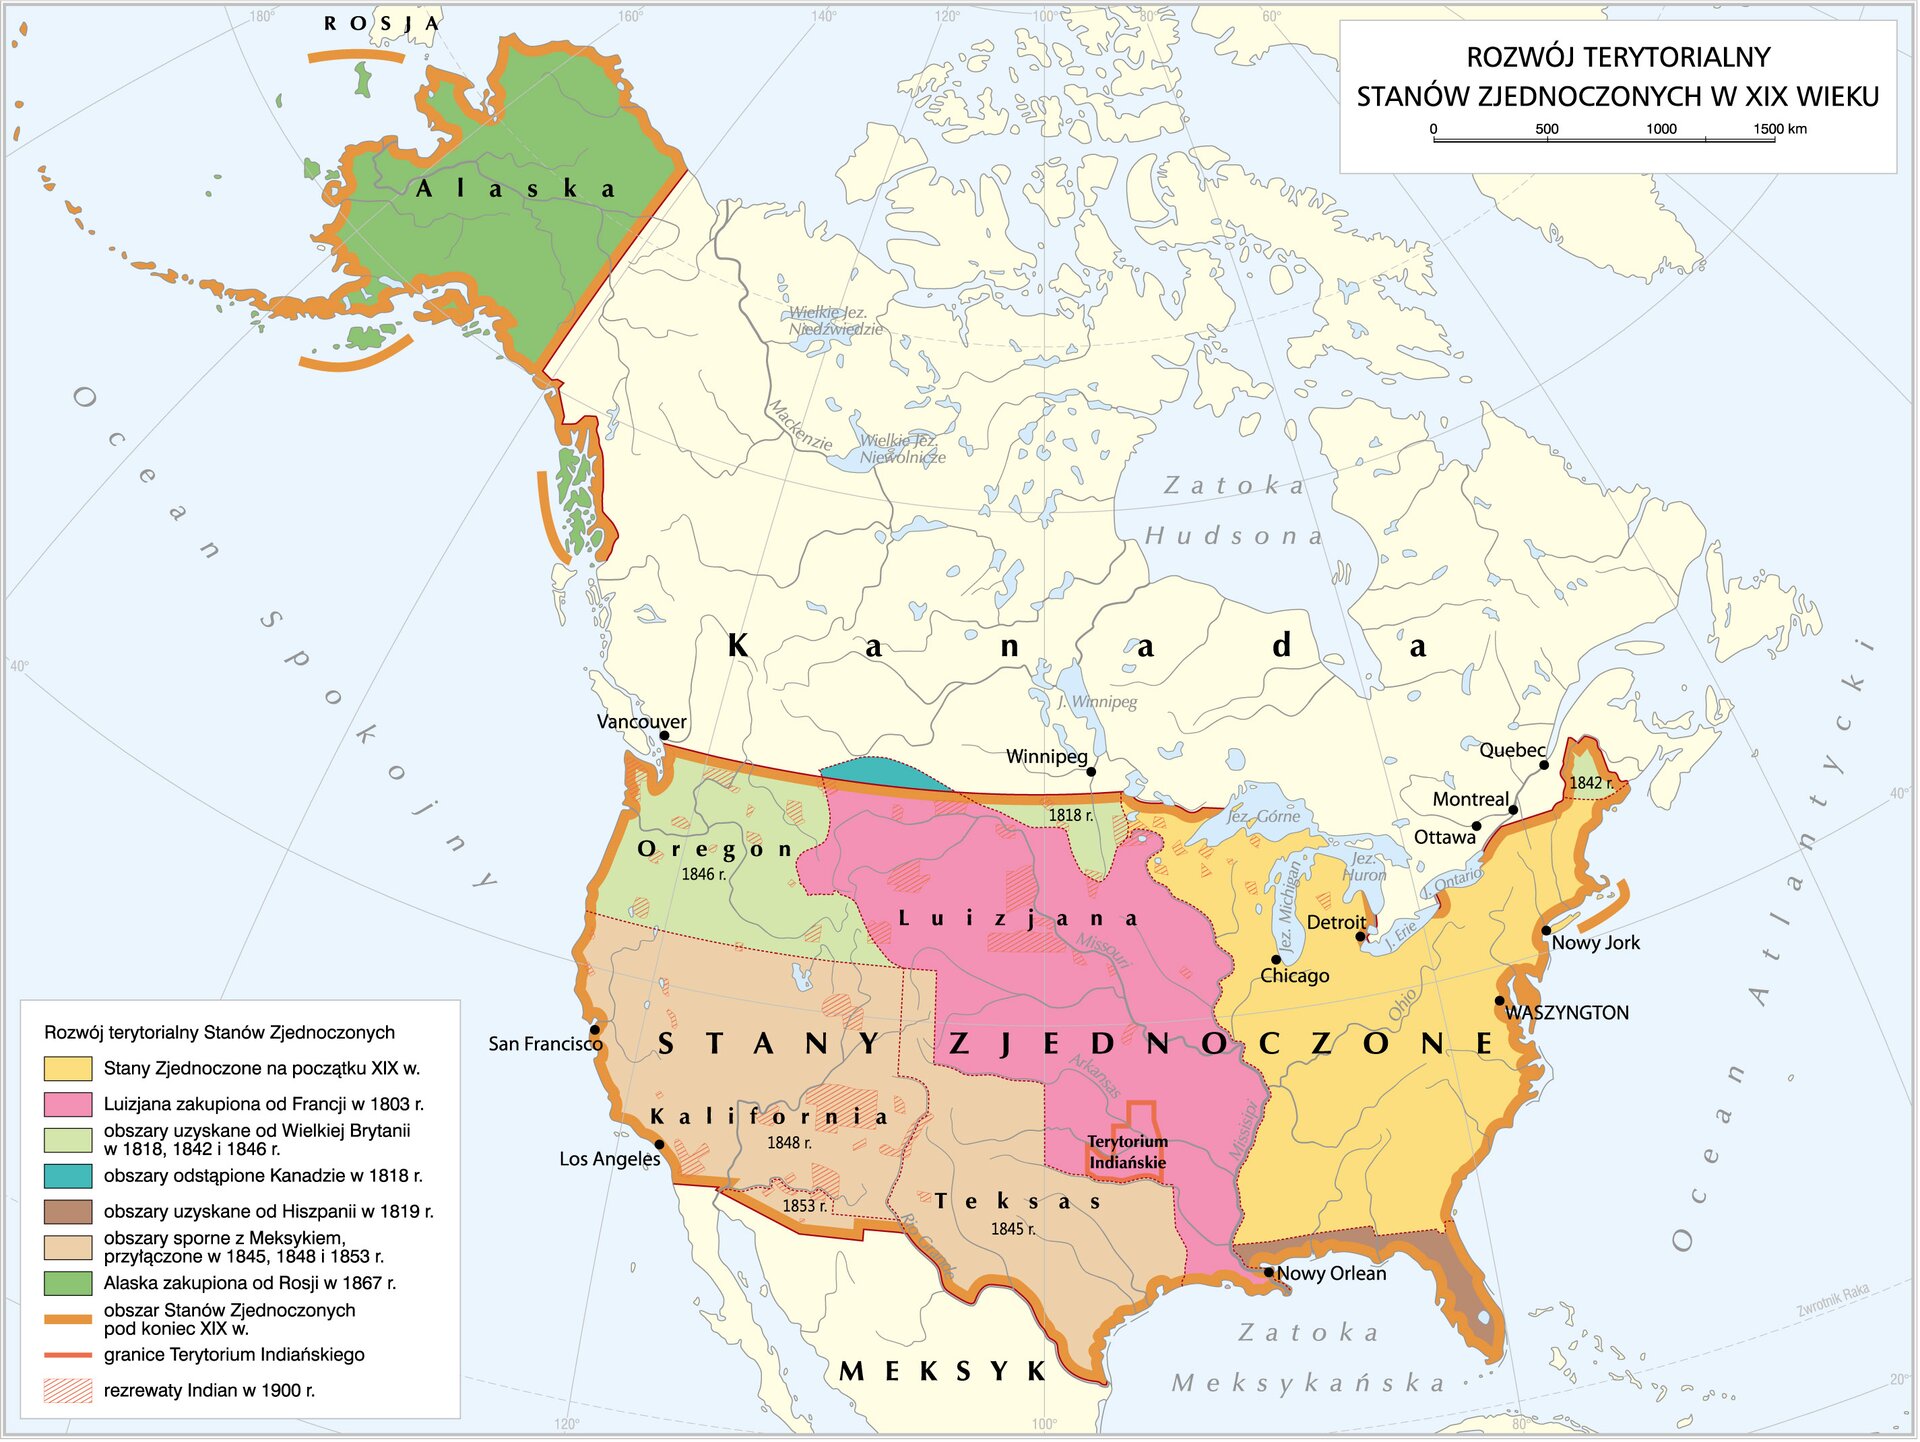 Mapa przedstawiająca rozwój terytorialny USA w XIX wieku. Zielonym kolorem oznaczono terytorium Alaski (zakupioną od Rosji w 1867 r.), jasnozielonym Oregon (obszar uzyskany od Wielkiej Brytanii w 1846 r.), pomarańczowym Kalifornię i Teksas (obszary sporne z Meksykiem, przyłączone w 1845, 1848 i 1853 r.), czerwonym Luizjanę z odznaczonym Terytorium Indiańskim (zakupioną od Francji w 1803 r.). Kolorem żółtym oznaczono terytorium USA w początkach XIX wieku, obejmujące głównie zachodnie wybrzeże. Kraje ukazane na mapie to także Kanada i Meksyk. Kolorem brązowym oznaczono granice USA pod koniec XIX wieku, obejmujące znaczną część jej współczesnego terytorium, bez Półwyspu Kalifornijskiego. Kolorem niebieskim odznaczono fragment terytorium odstąpionego Kanadzie, na północ od Luizjany. Kolorem brązowym oznaczono Florydę (terytorium uzyskane od Hiszpanii w 1819 r.). Popielatym kolorem oznaczono indiańskie rezerwaty, rozsiane po terytoriach Kalifornii, Oregonu, Luizjany i na północ od Chicago. Miasta: San Francisco, Los Angeles, Vancouver, Winnipeg, Chicago, Detroit, Nowy Orlean, Ottawa, Montreal, Quebec, Nowy Jork, Waszyngton. 